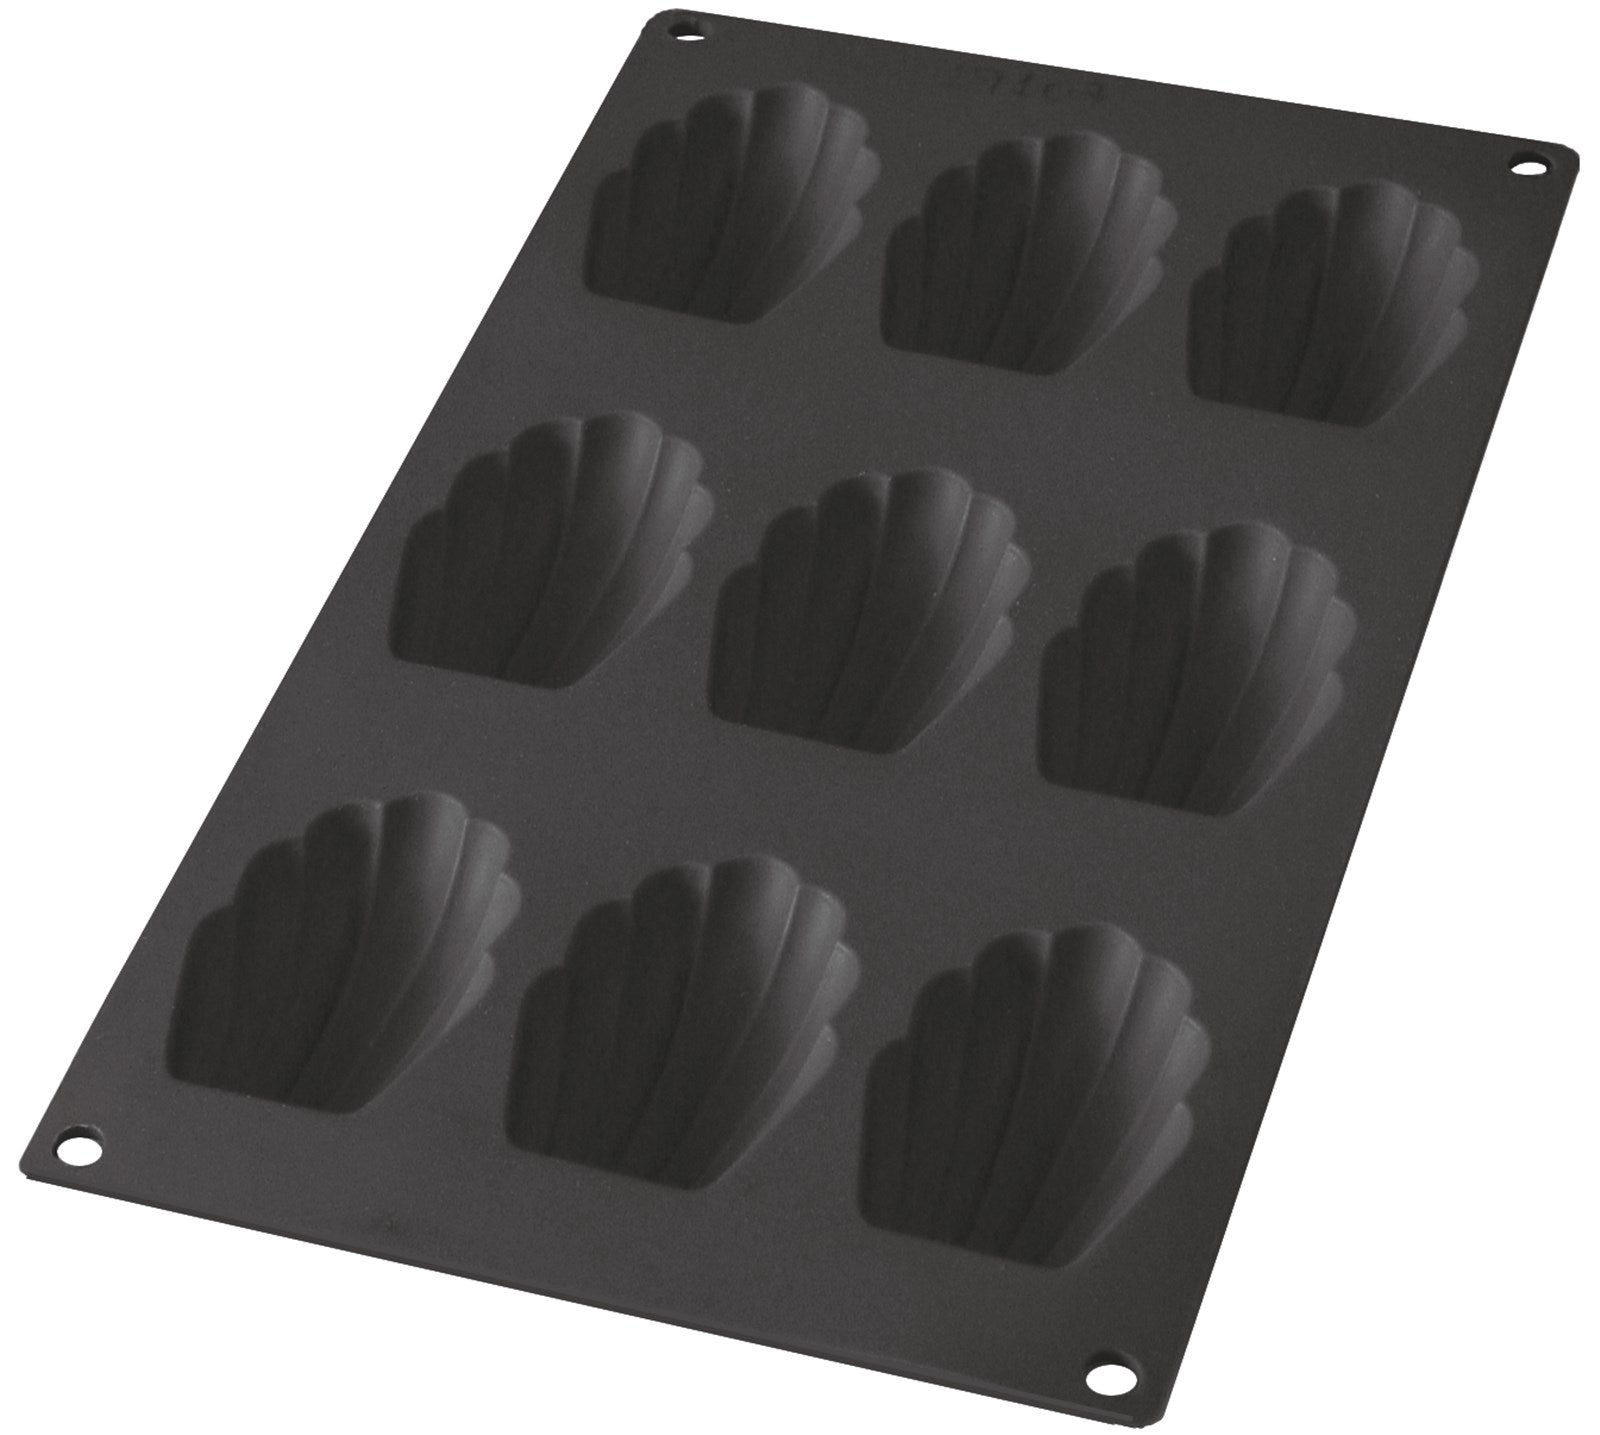 Backform 9er Madeleine schwarz, 7x4.7 cm in Schwarz präsentiert im Onlineshop von KAQTU Design AG. Backen ist von Lékué